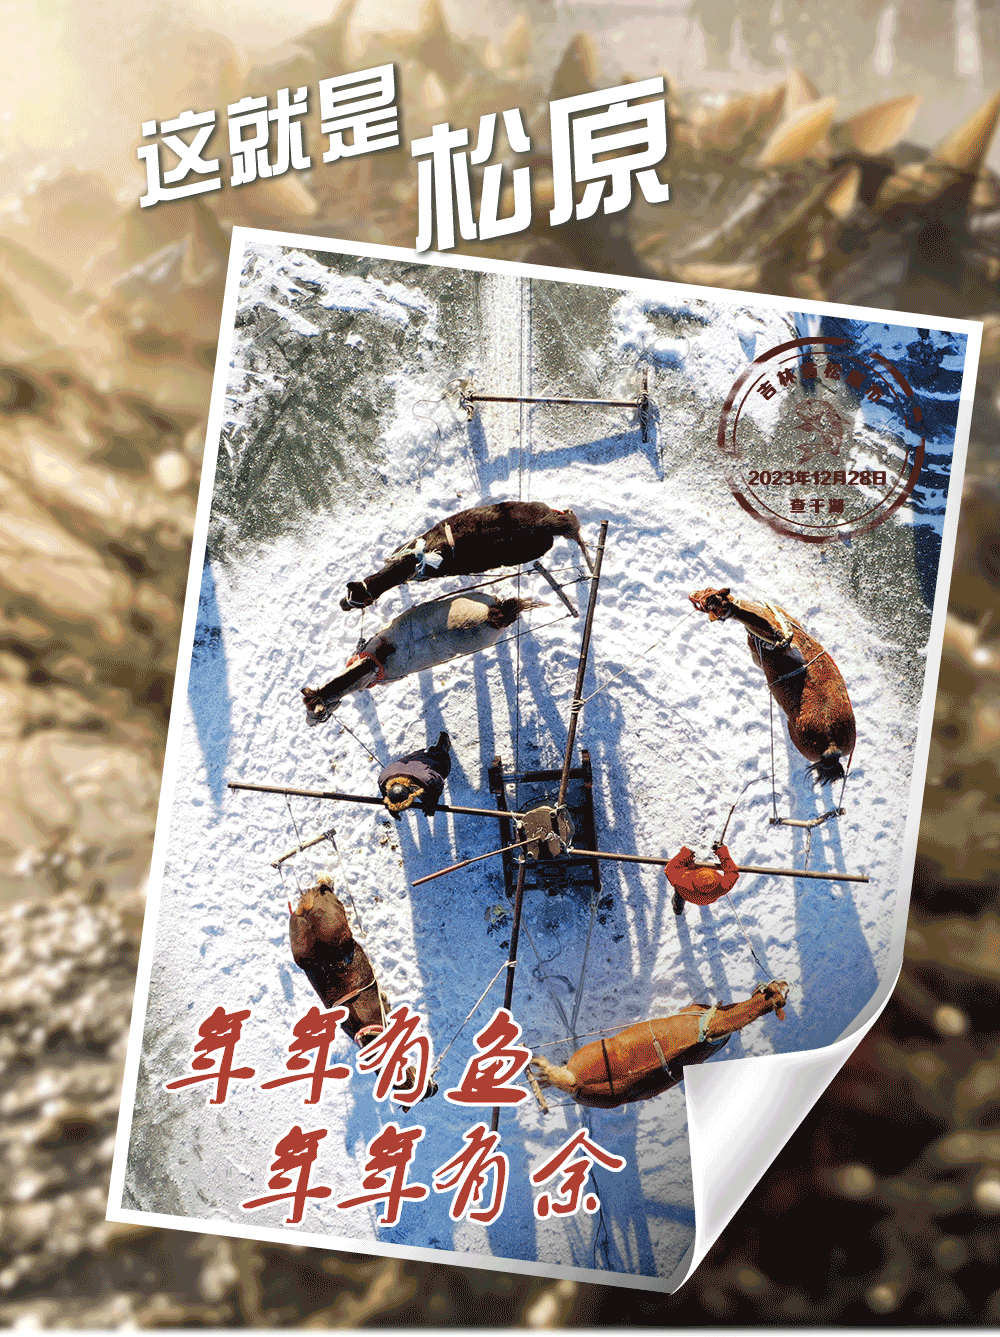 来自查干湖的明信片，邀您共赏“冰湖腾鱼”